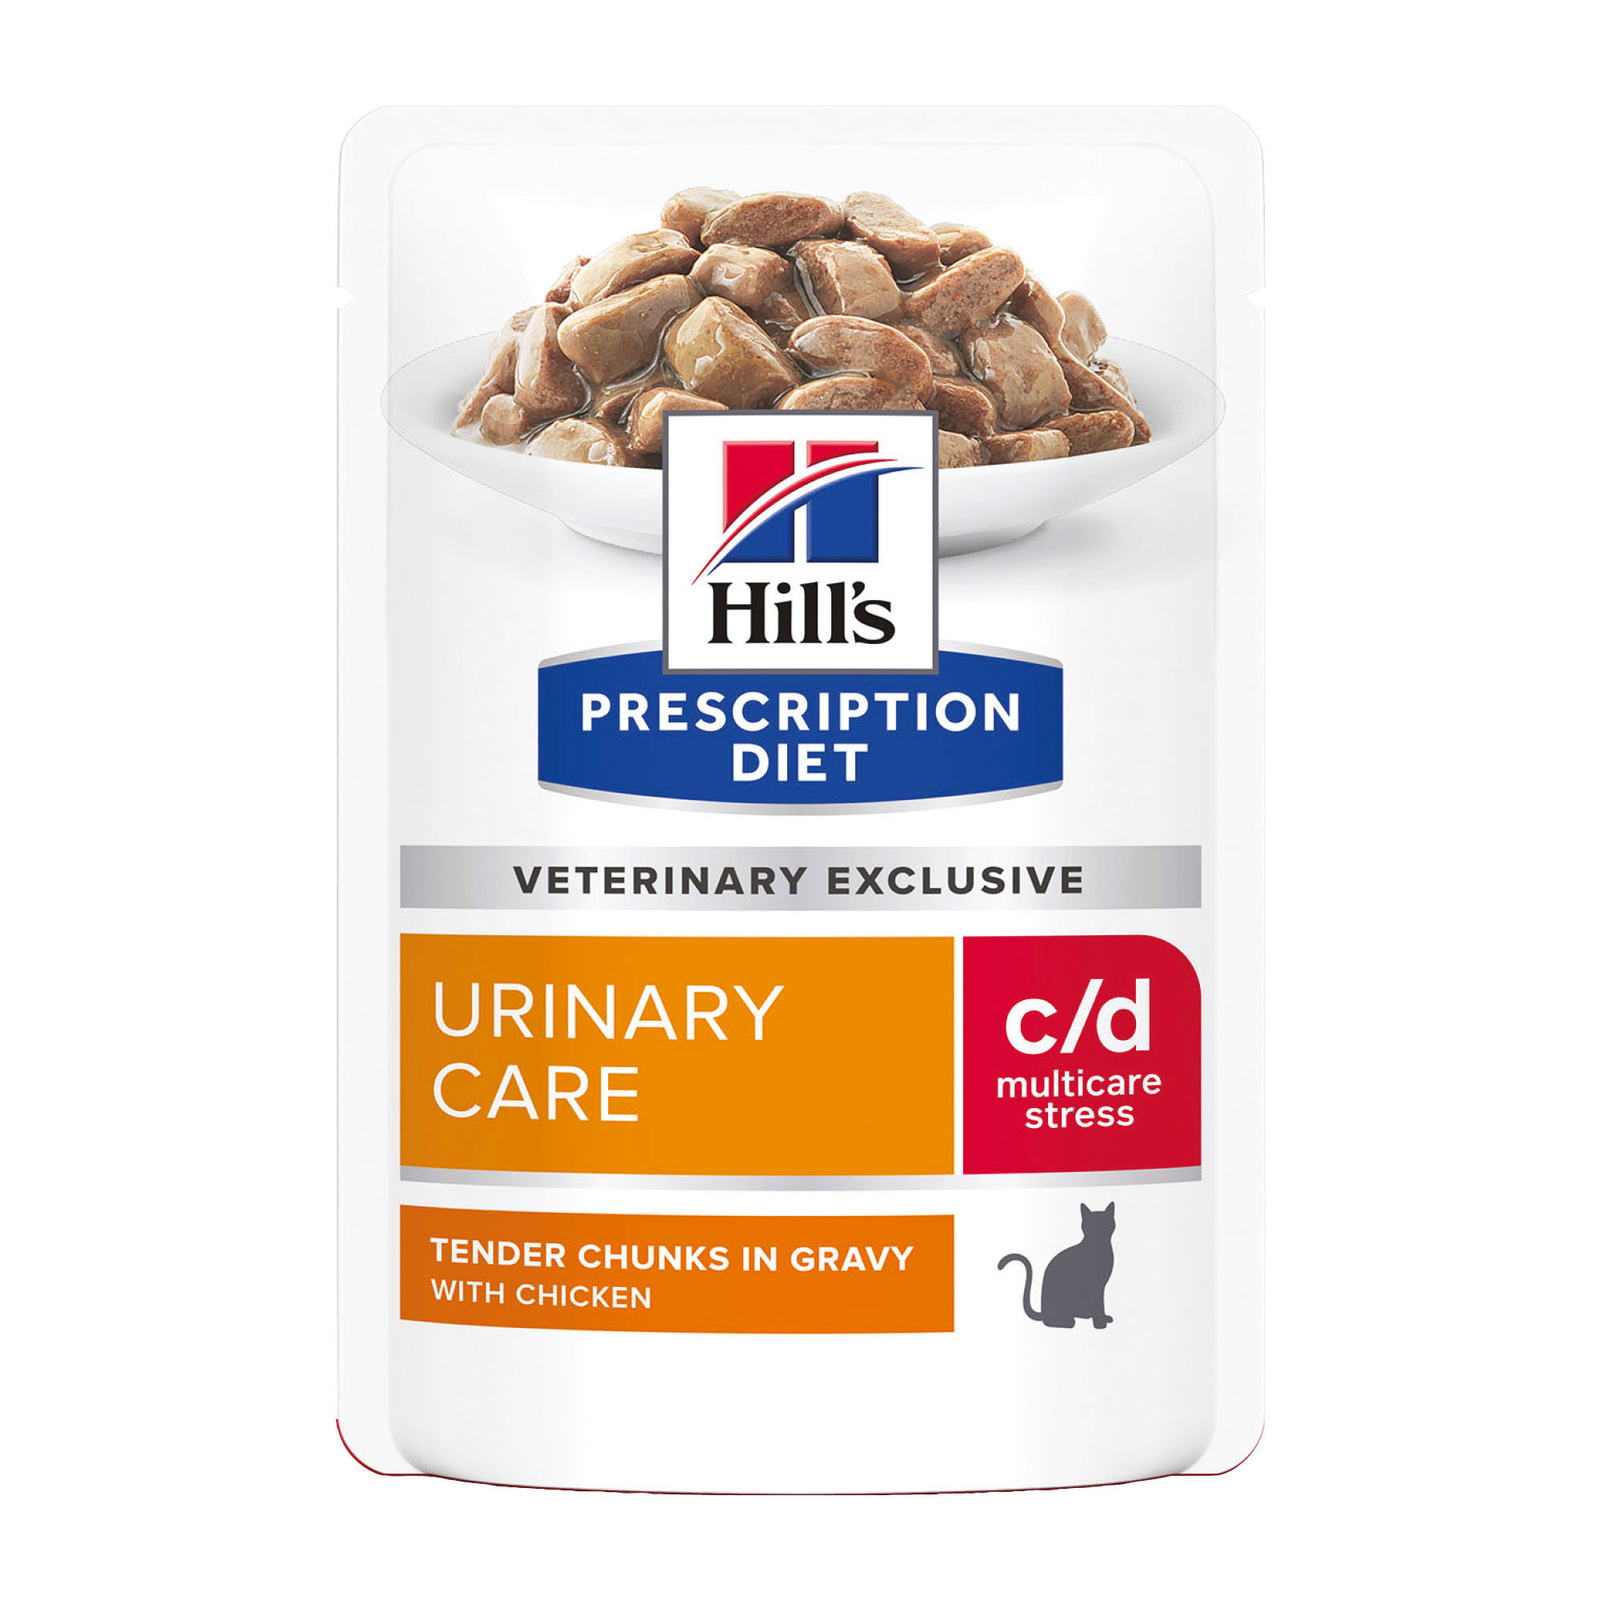 Hill's вет.консервы Hill's вет.консервы влажный диетический корм для кошек c/d Multicare Urinary Stress при профилактике цистита и мочекаменной болезни (мкб), в том числе вызванные стрессом, с курицей (85 г)